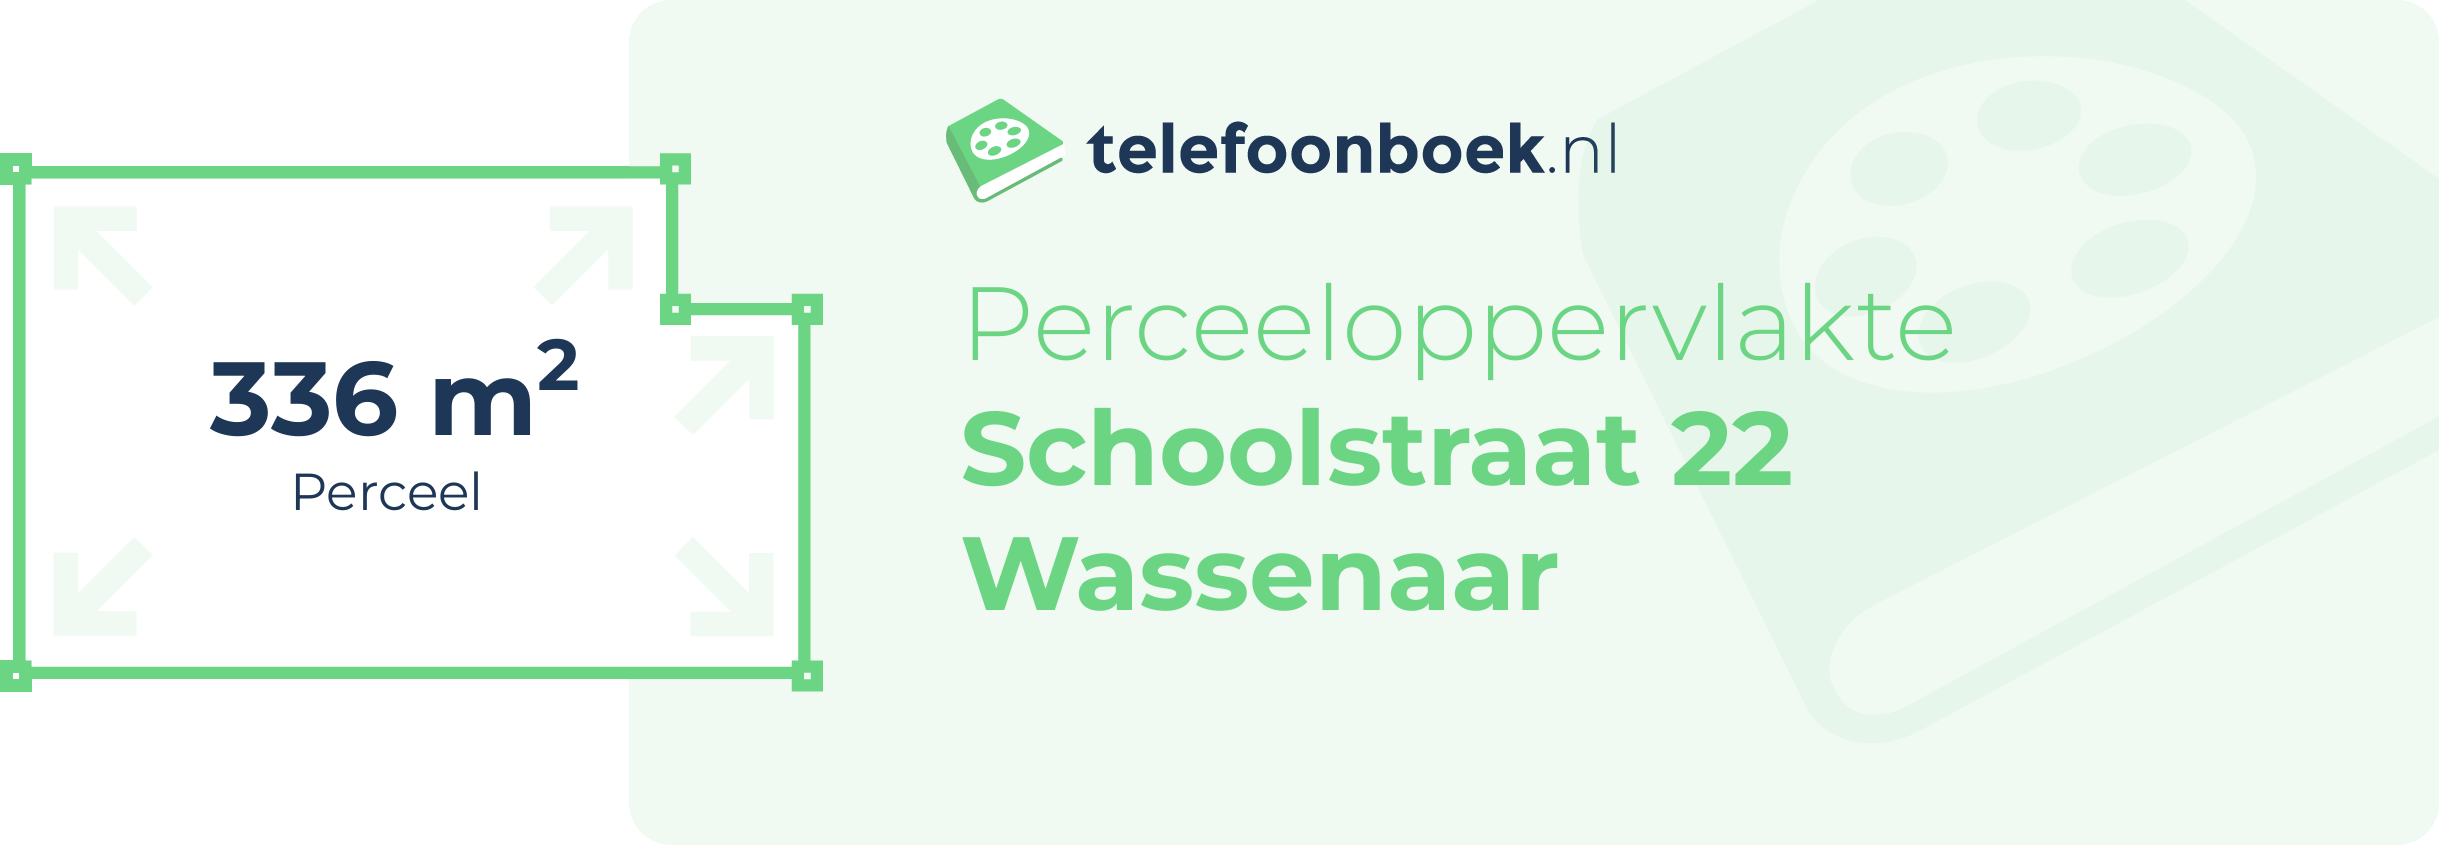 Perceeloppervlakte Schoolstraat 22 Wassenaar